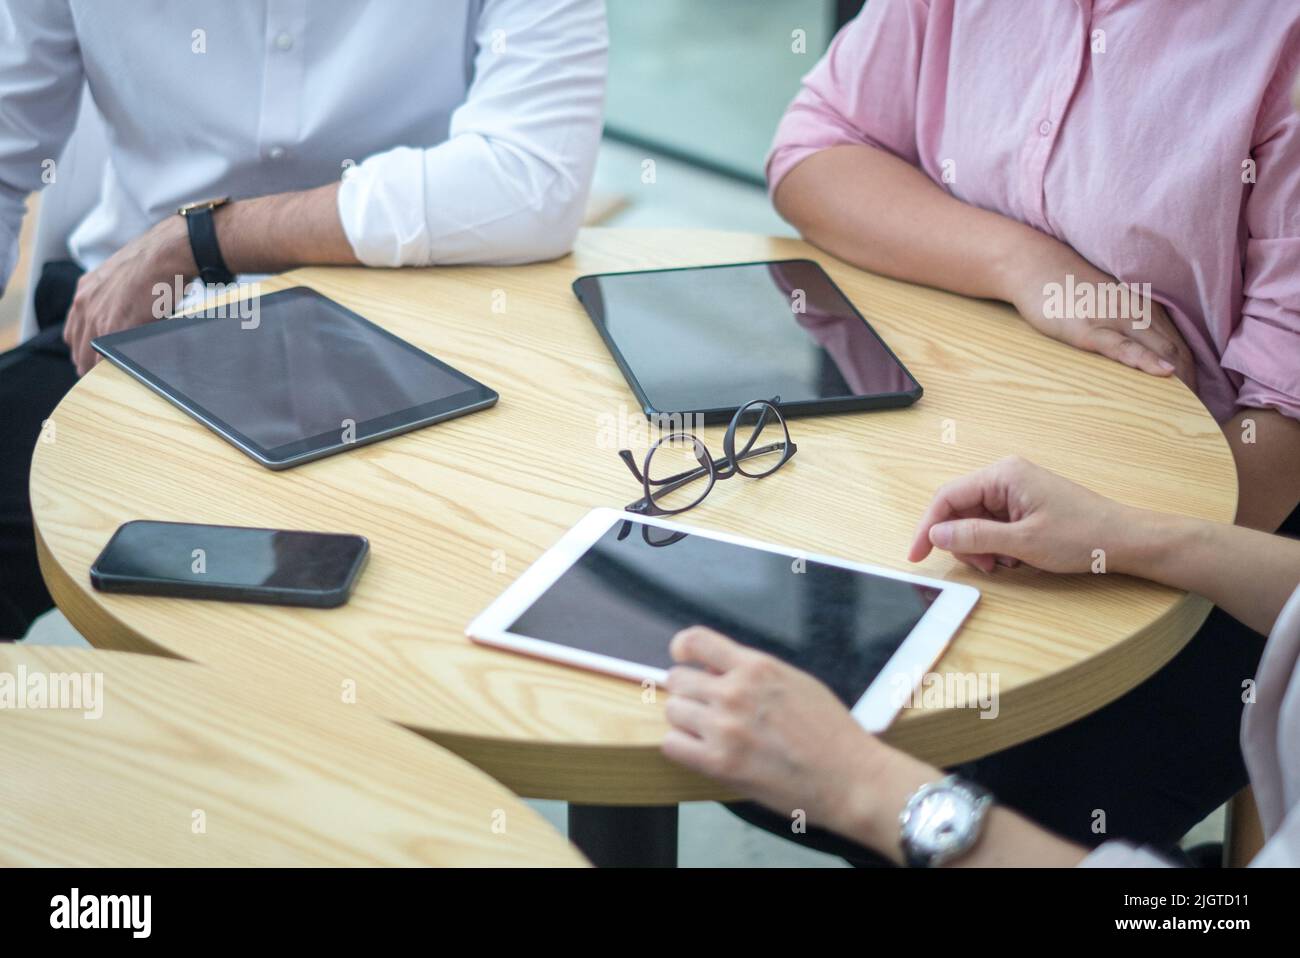 Tablet digitali e smartphone su un tavolo rotondo con persone in viaggio d'affari. Vista dall'alto e da vicino. Foto Stock